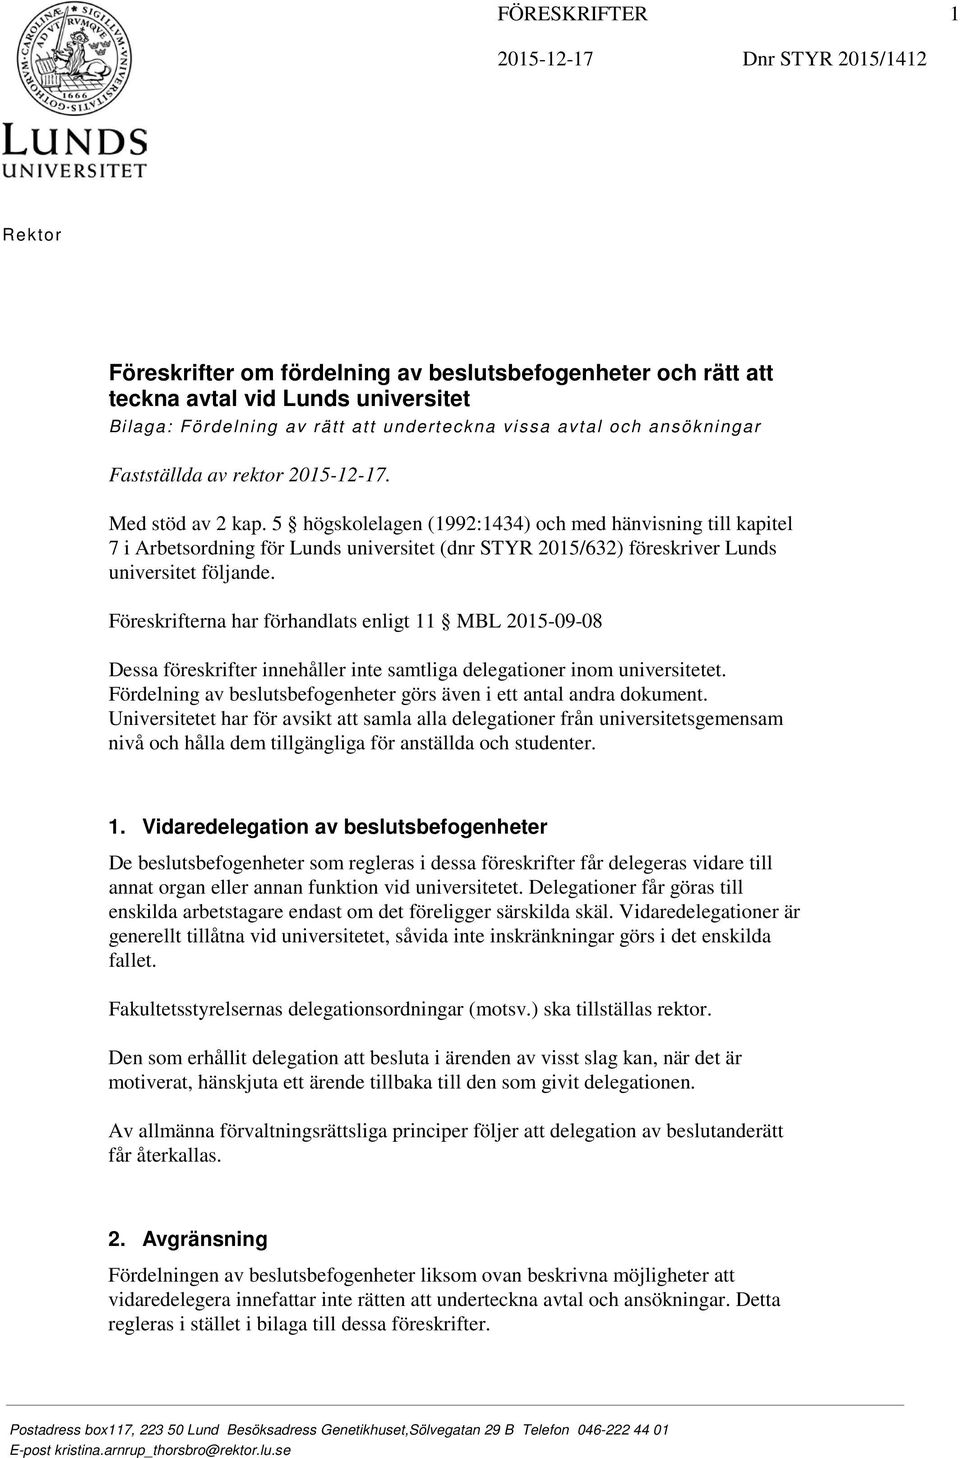 5 högskolelagen (1992:1434) och med hänvisning till kapitel 7 i Arbetsordning för Lunds universitet (dnr STYR 2015/632) föreskriver Lunds universitet följande.